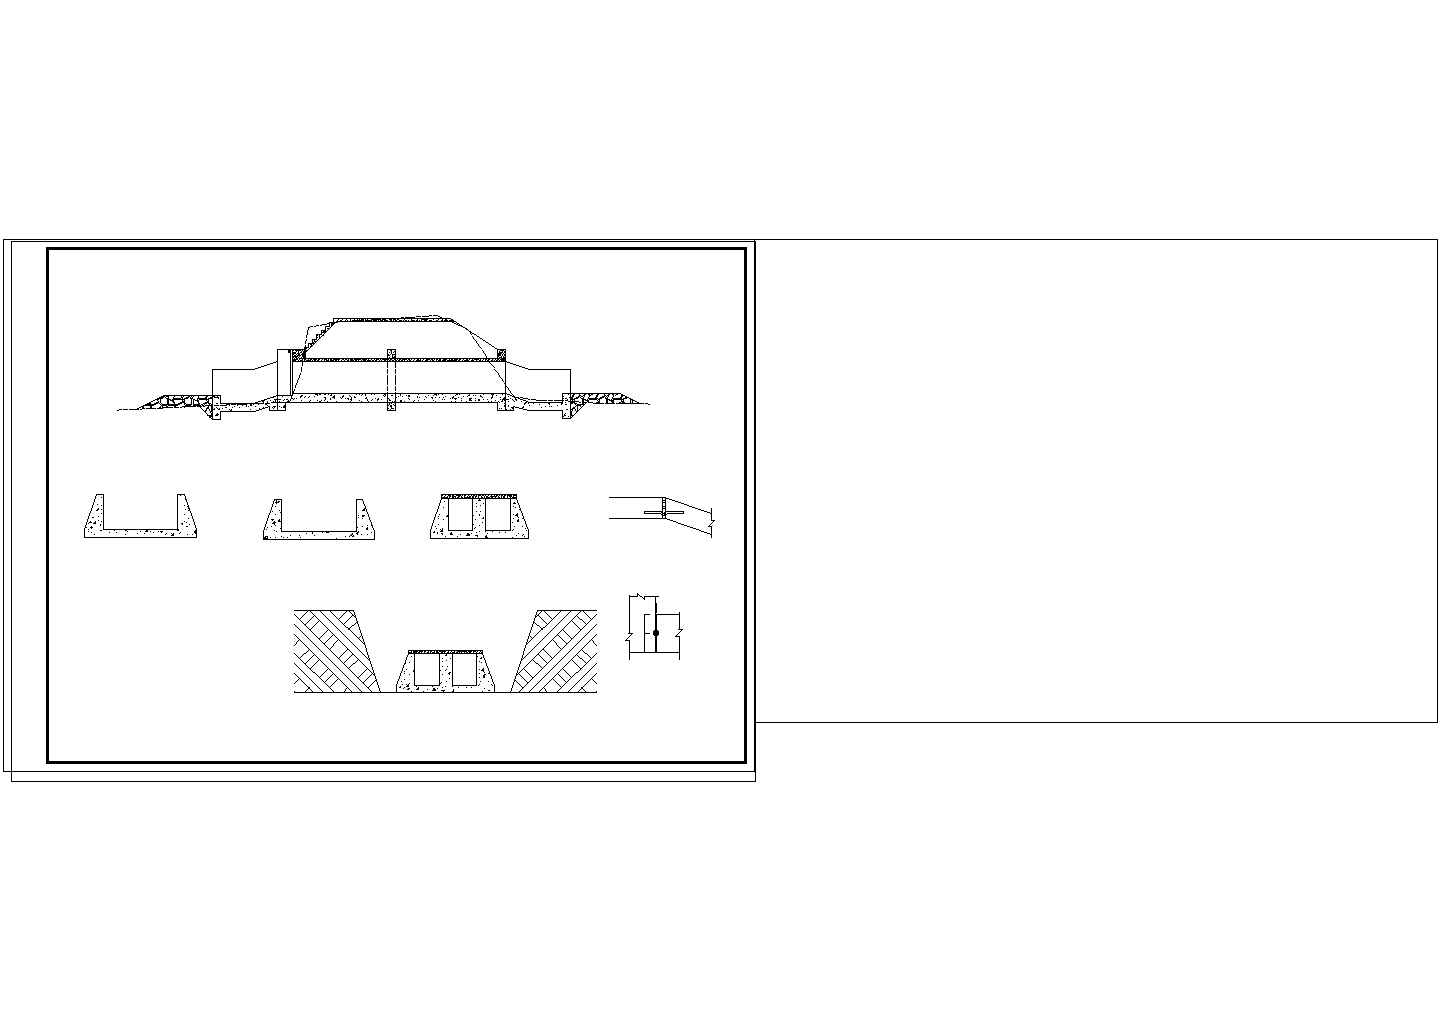 多孔海堤水闸的相关设计图纸